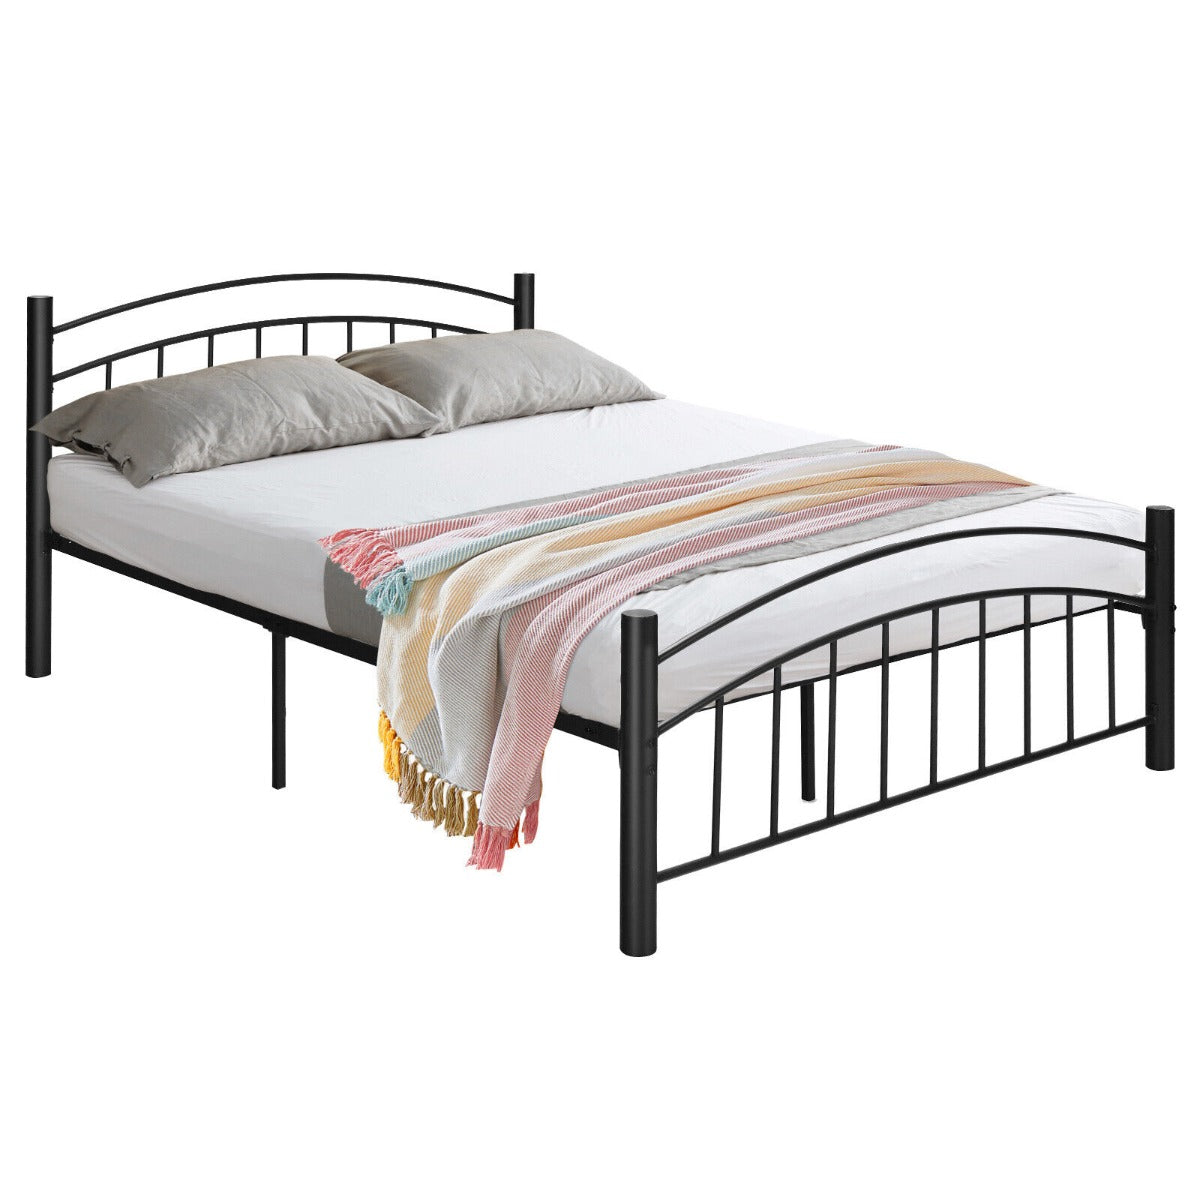 Metal Bed Frame Platform Bed with Headboard for Bedroom